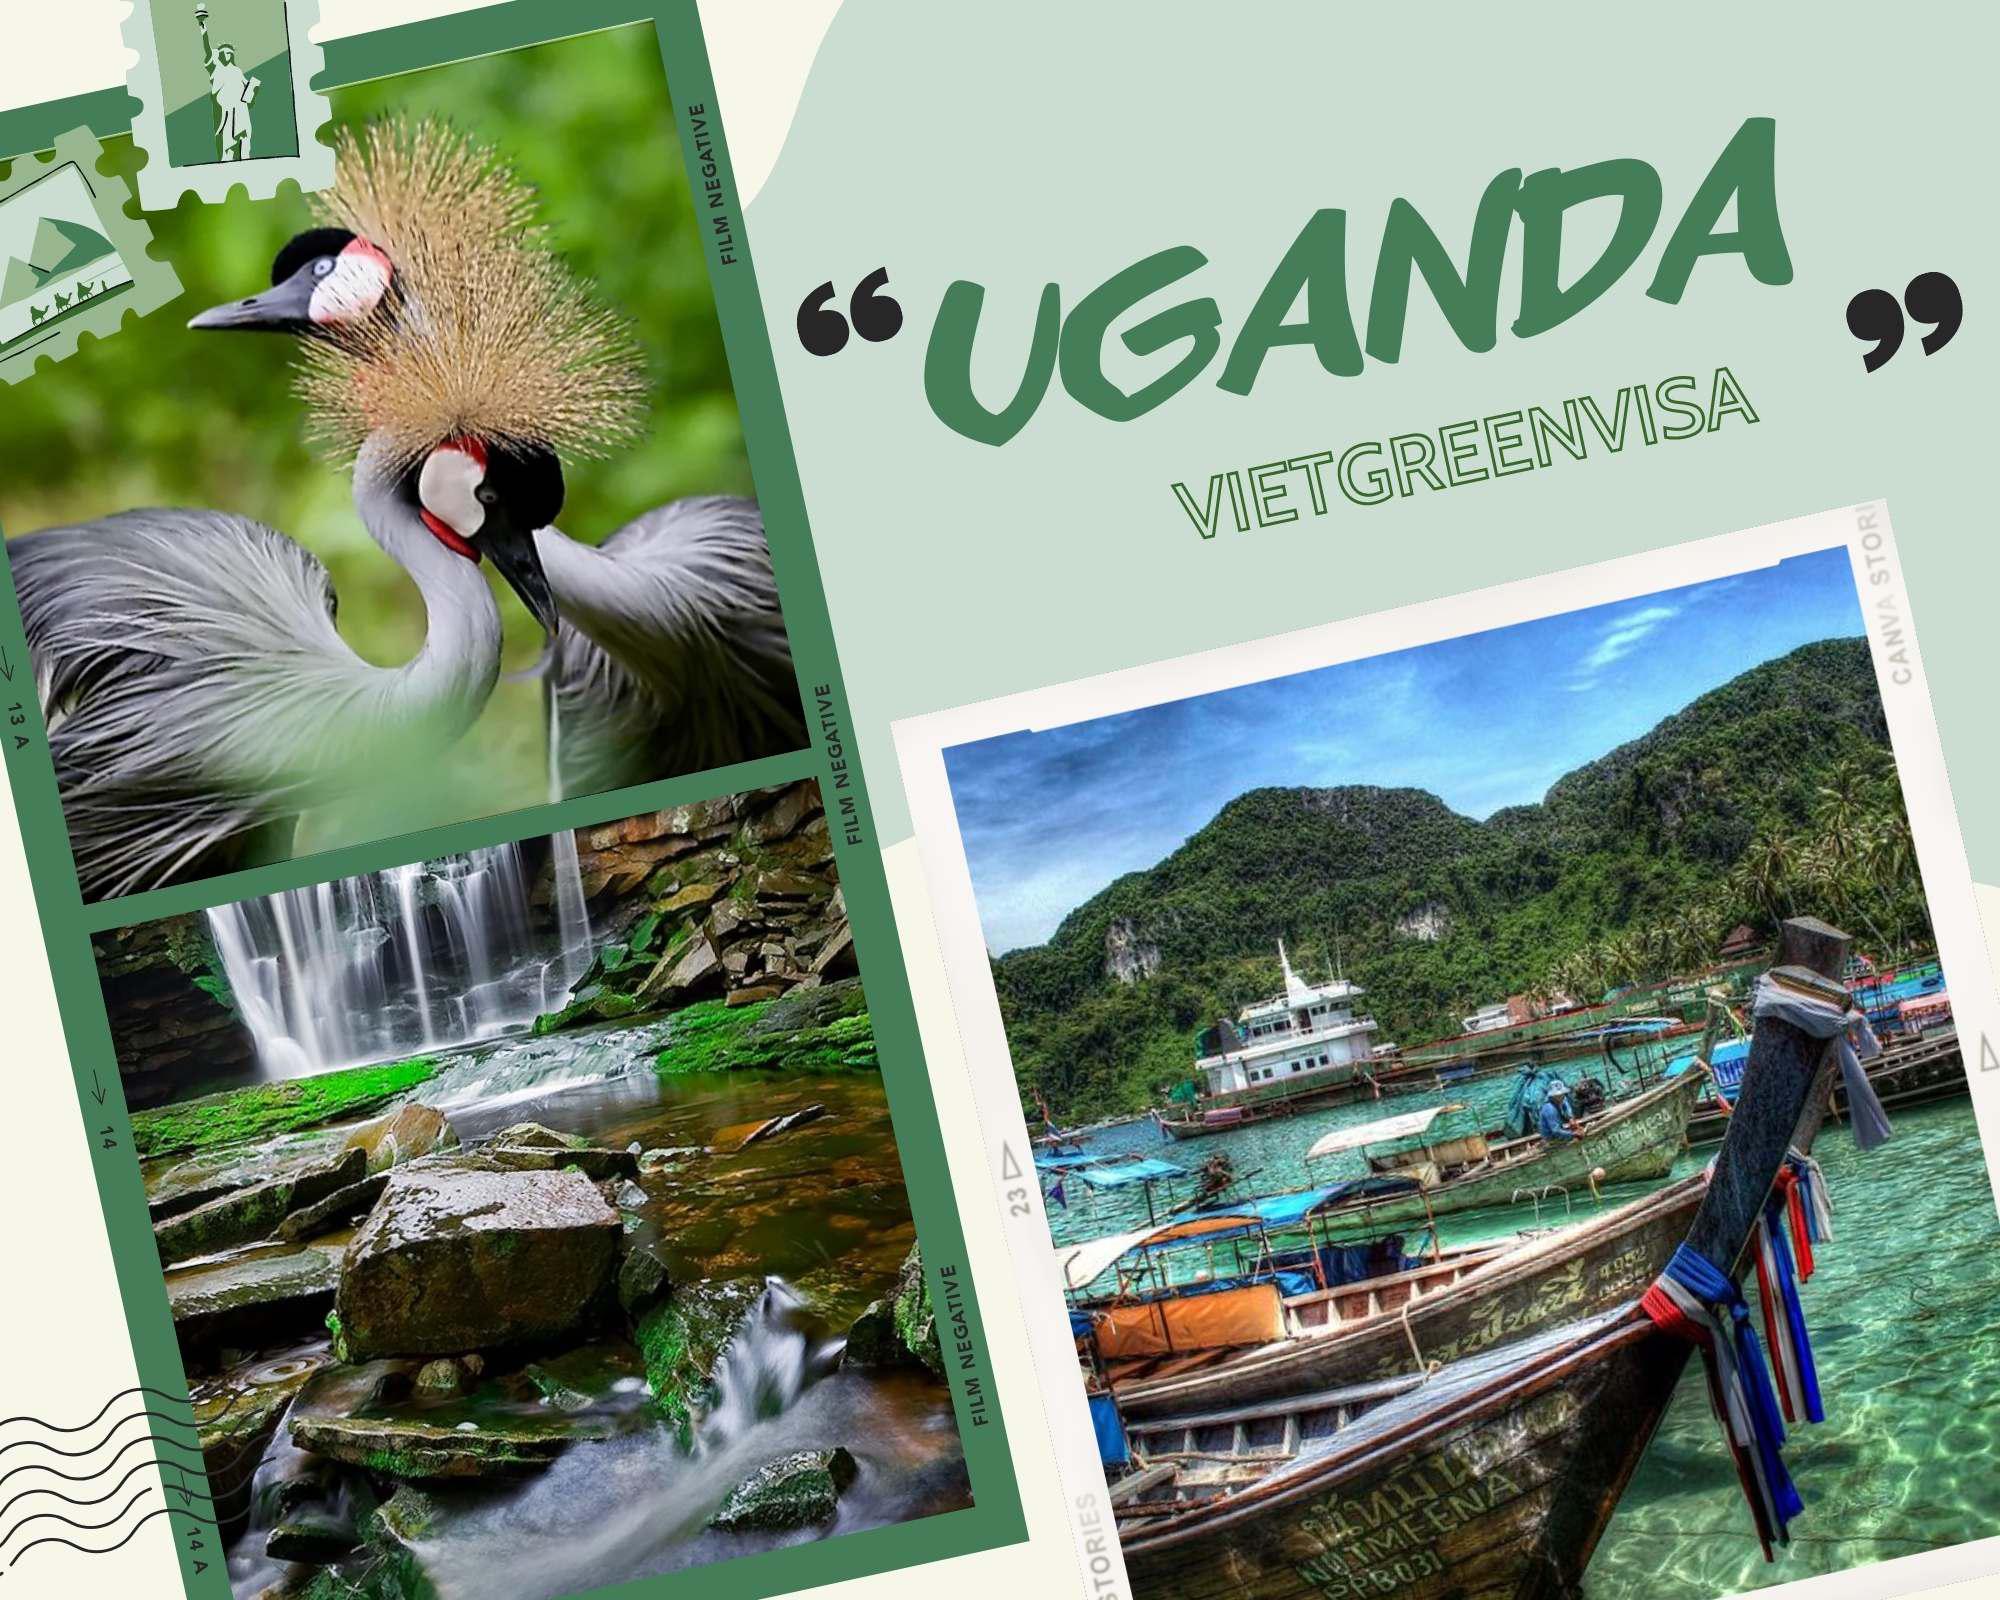 Thủ tục xin visa Uganda nhanh chóng